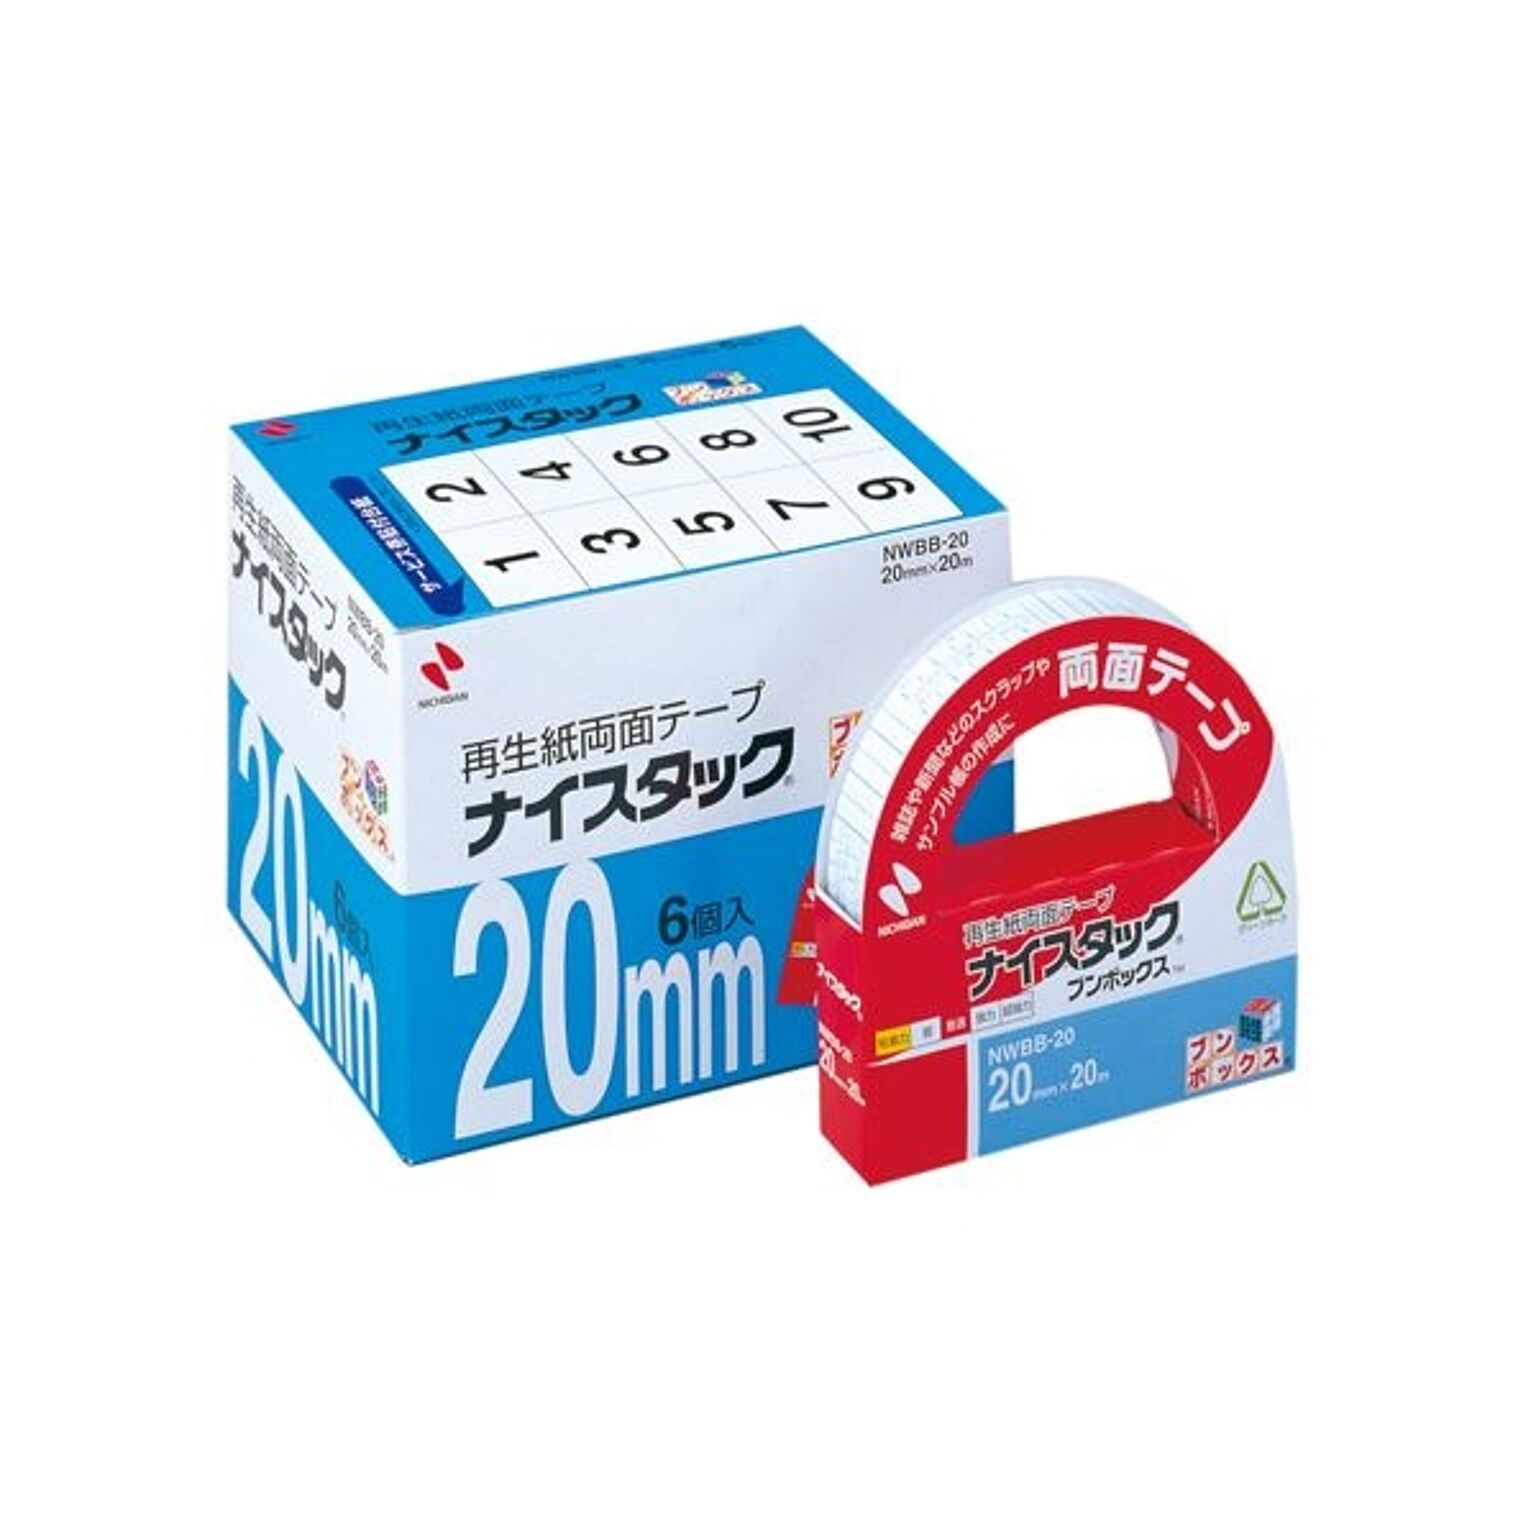 (まとめ) ニチバン ナイスタック 再生紙両面テープ ブンボックス 大巻 20mm×20m NWBB-20 1パック(6巻) 【×2セット】